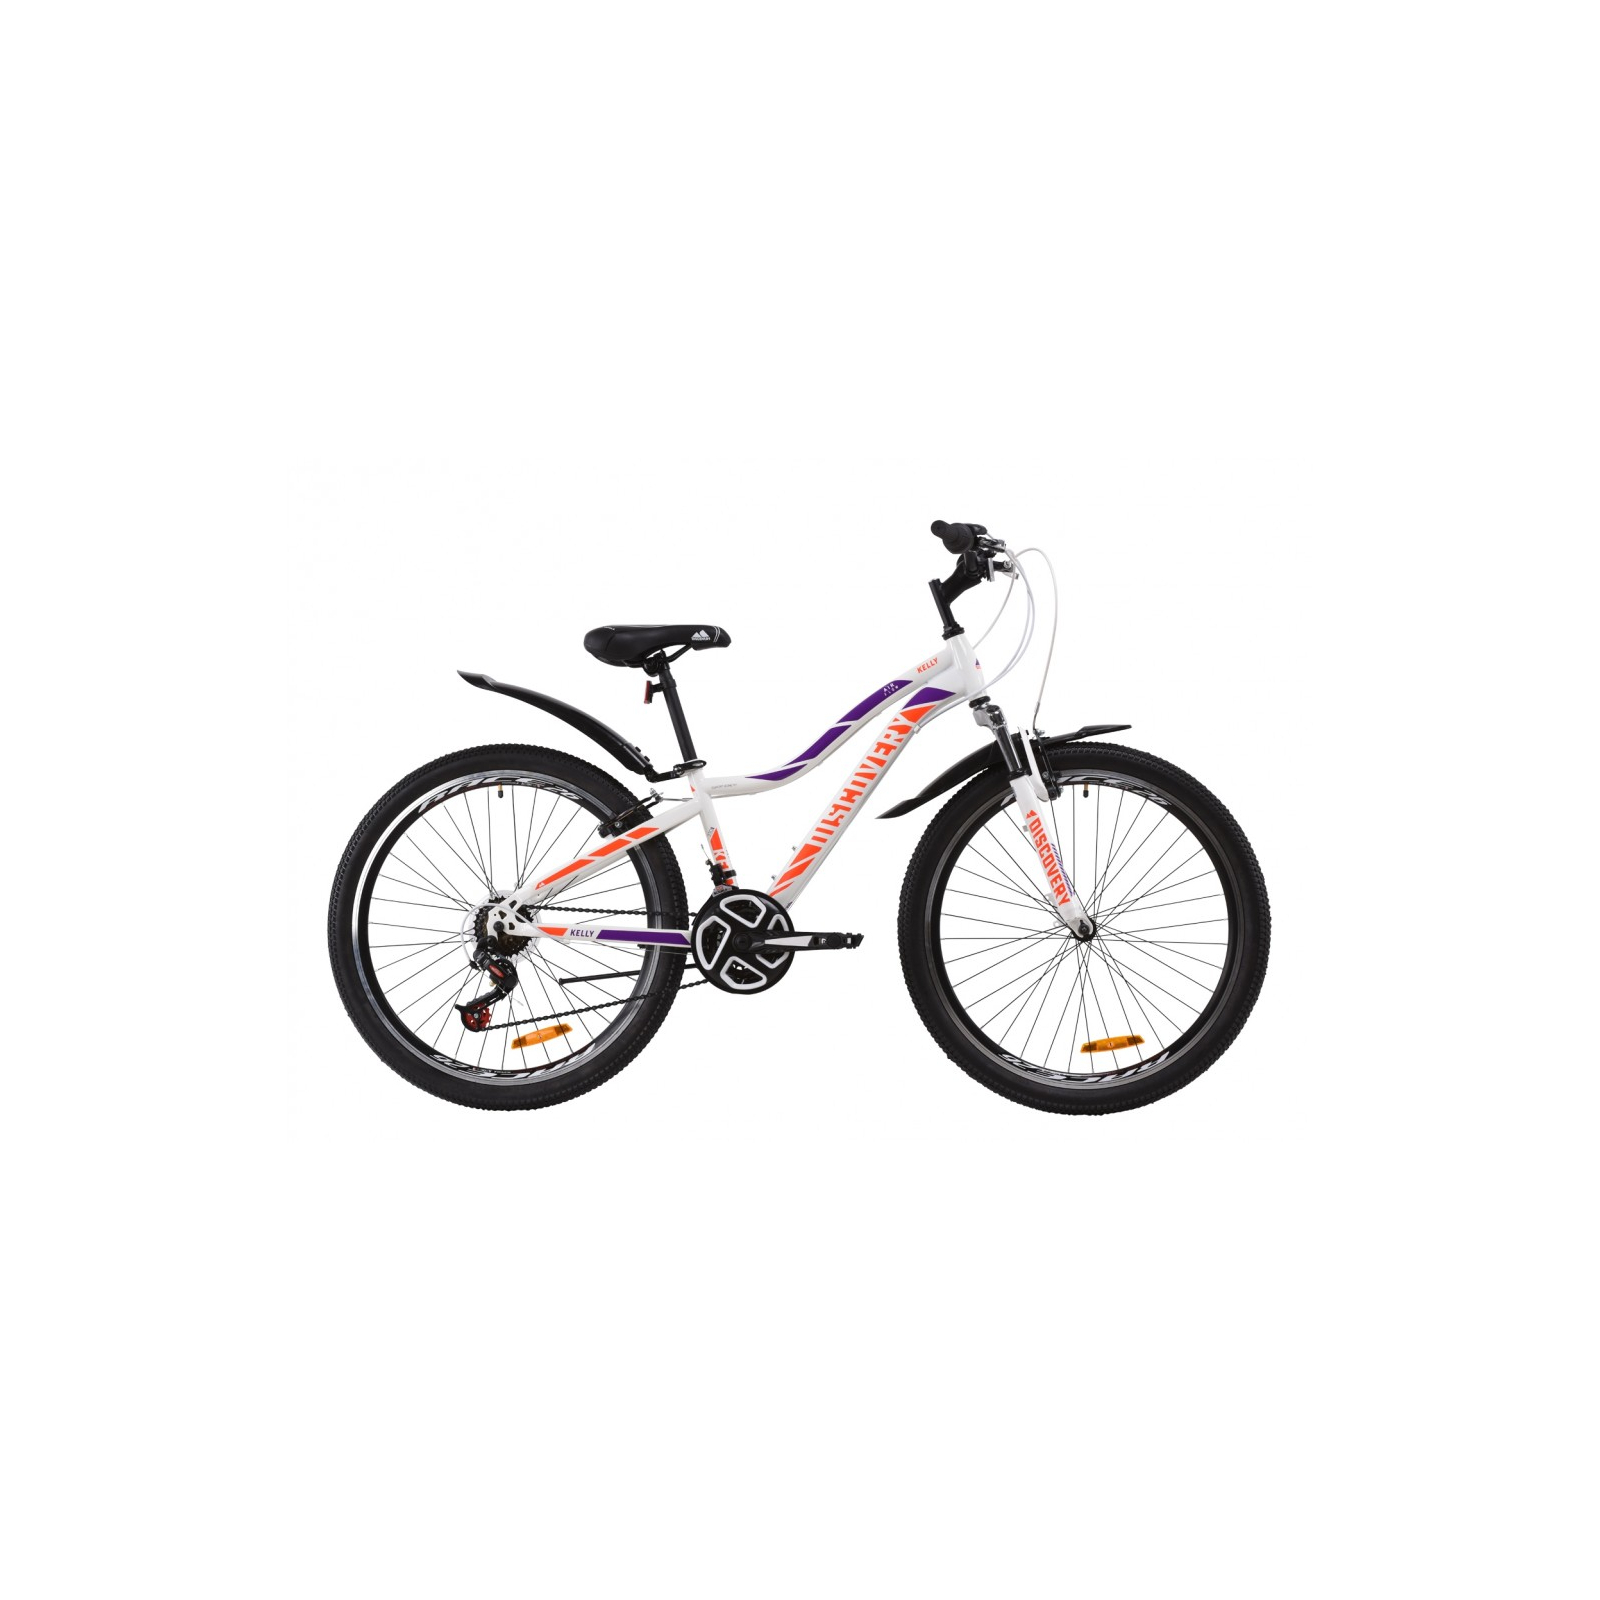 Велосипед Discovery 26" KELLY AM Vbr рама-13,5" St 2020 бело-фиолетовый с оранже (OPS-DIS-26-247)